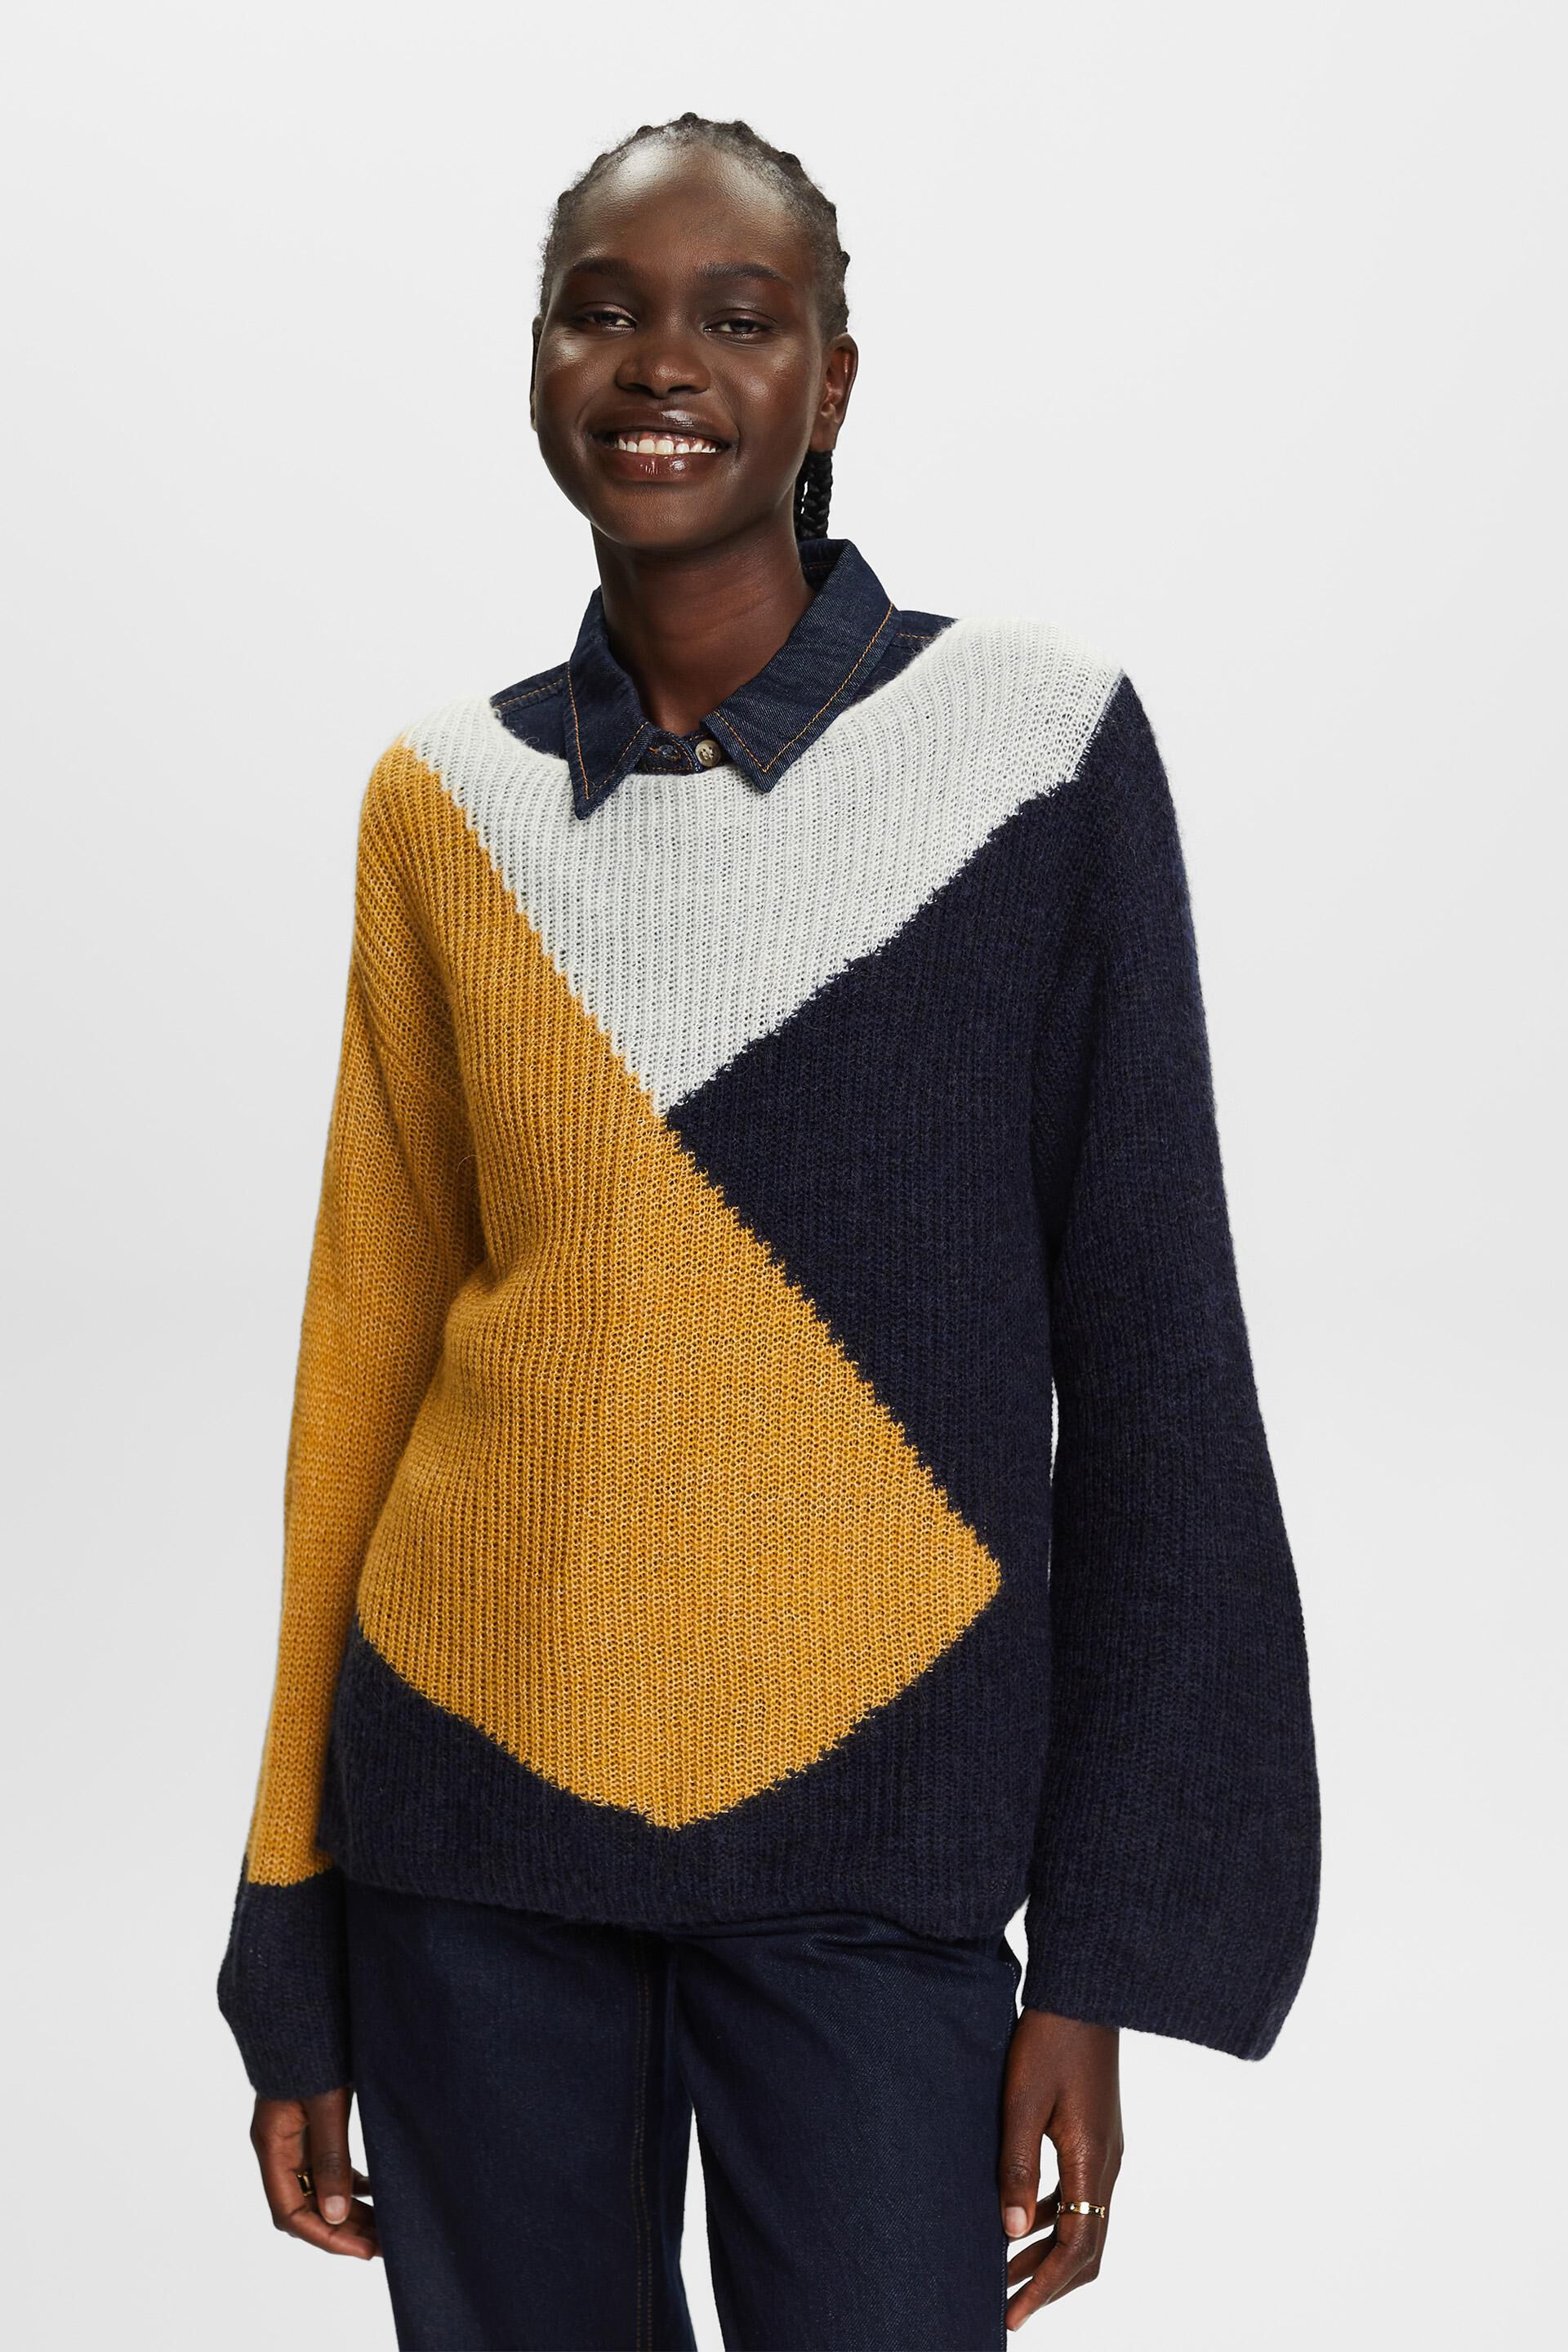 Esprit Colourblock jumper, wool blend